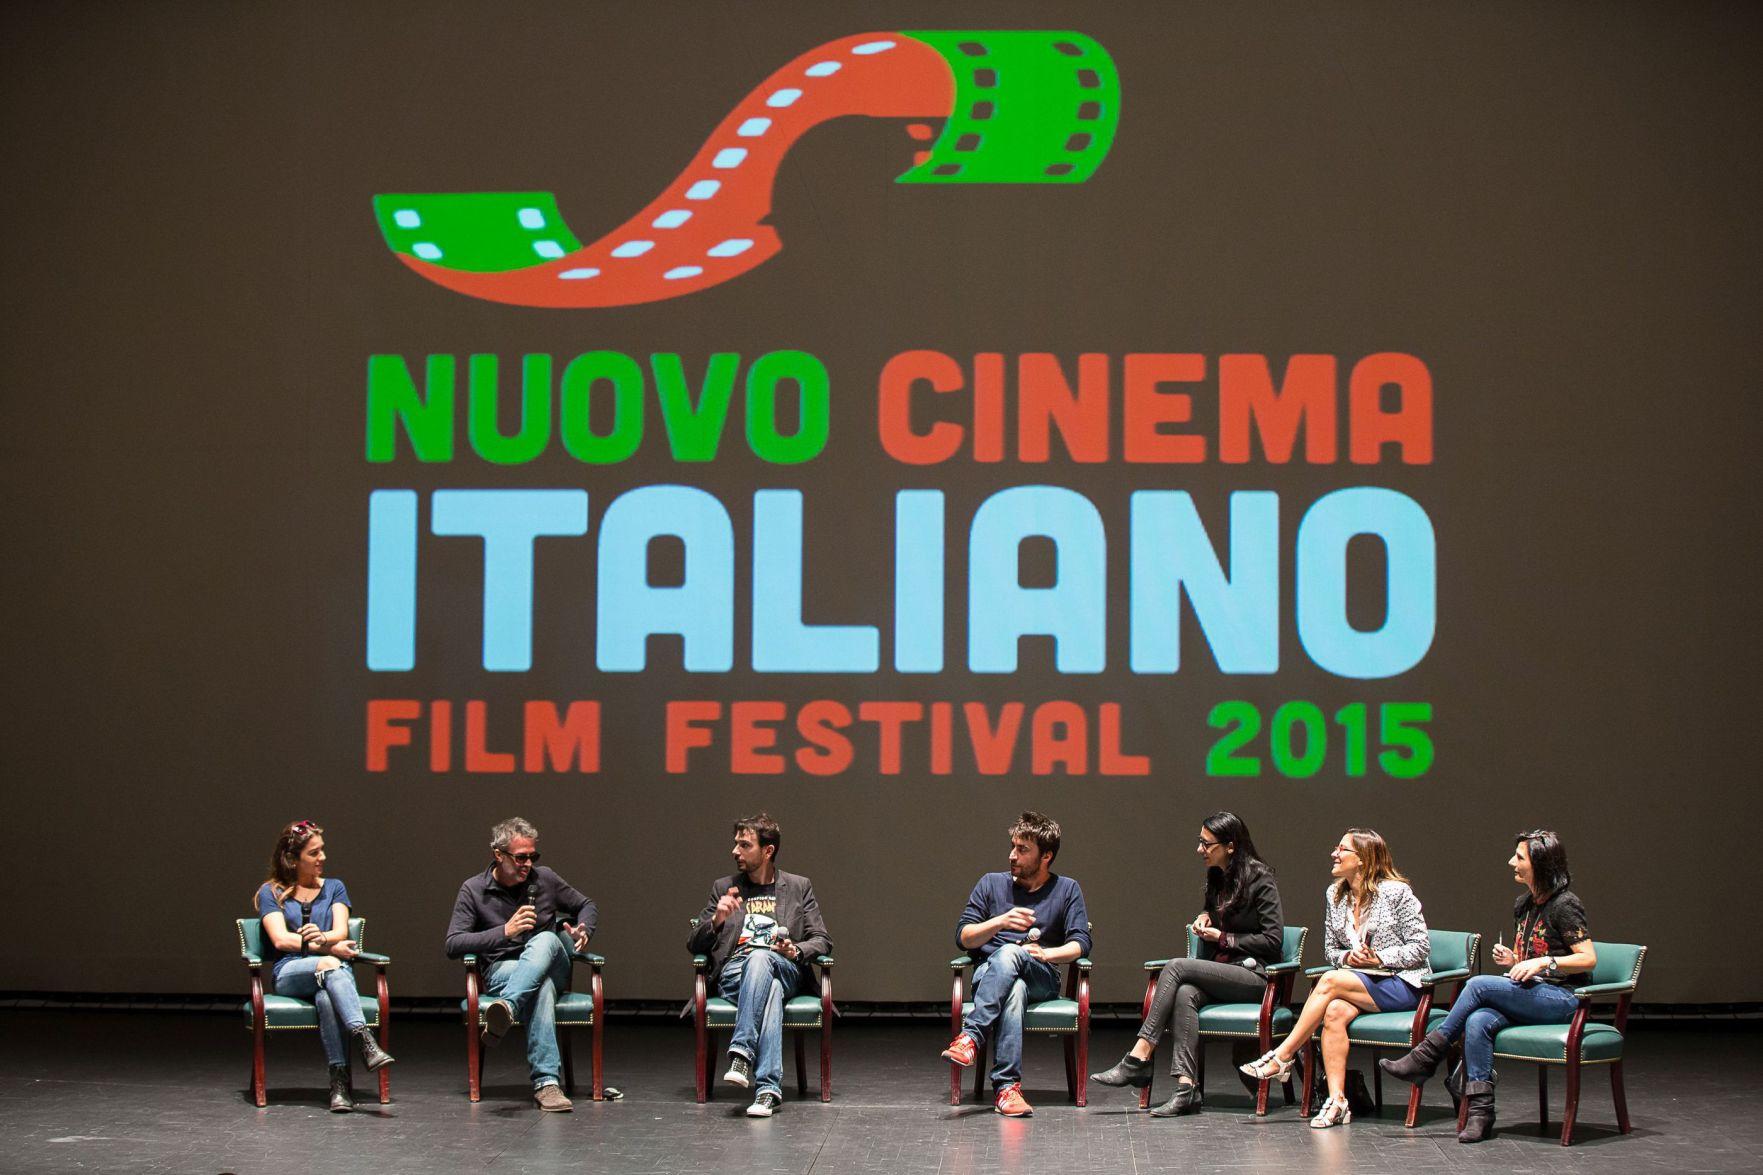 Nuovo Cinema Italiano 10th film festival celebrates Italian culture and ...